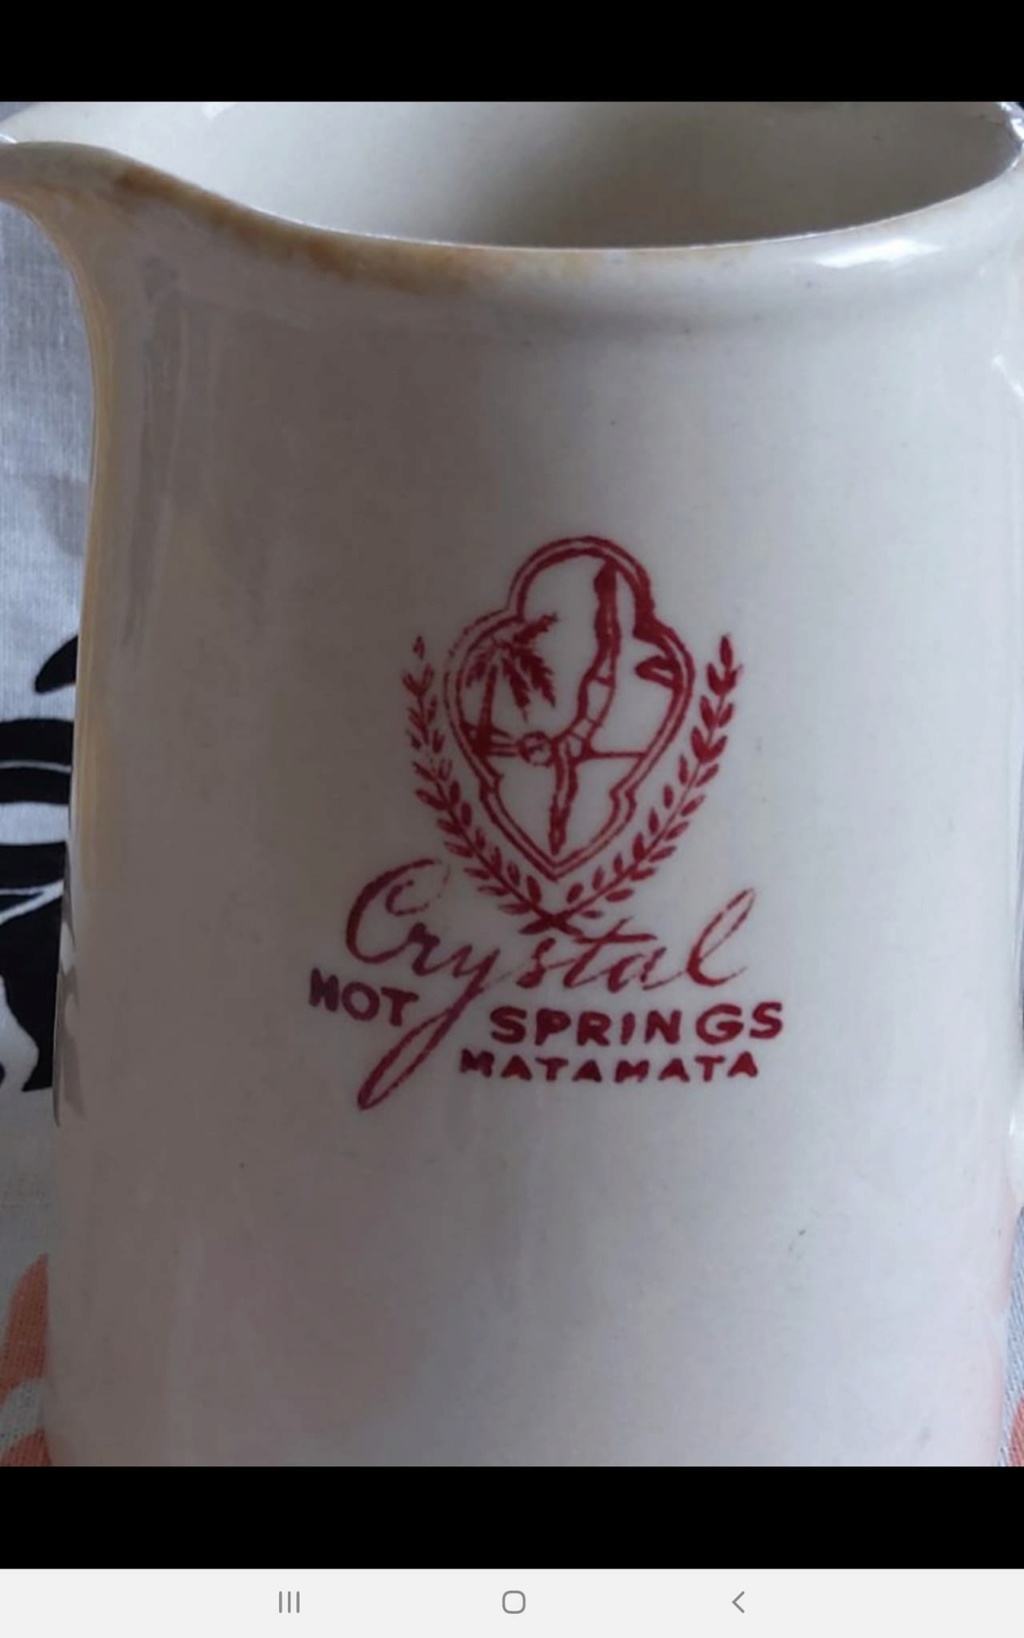 Crystal Springs Matamata and Highway badged ware Crysta10